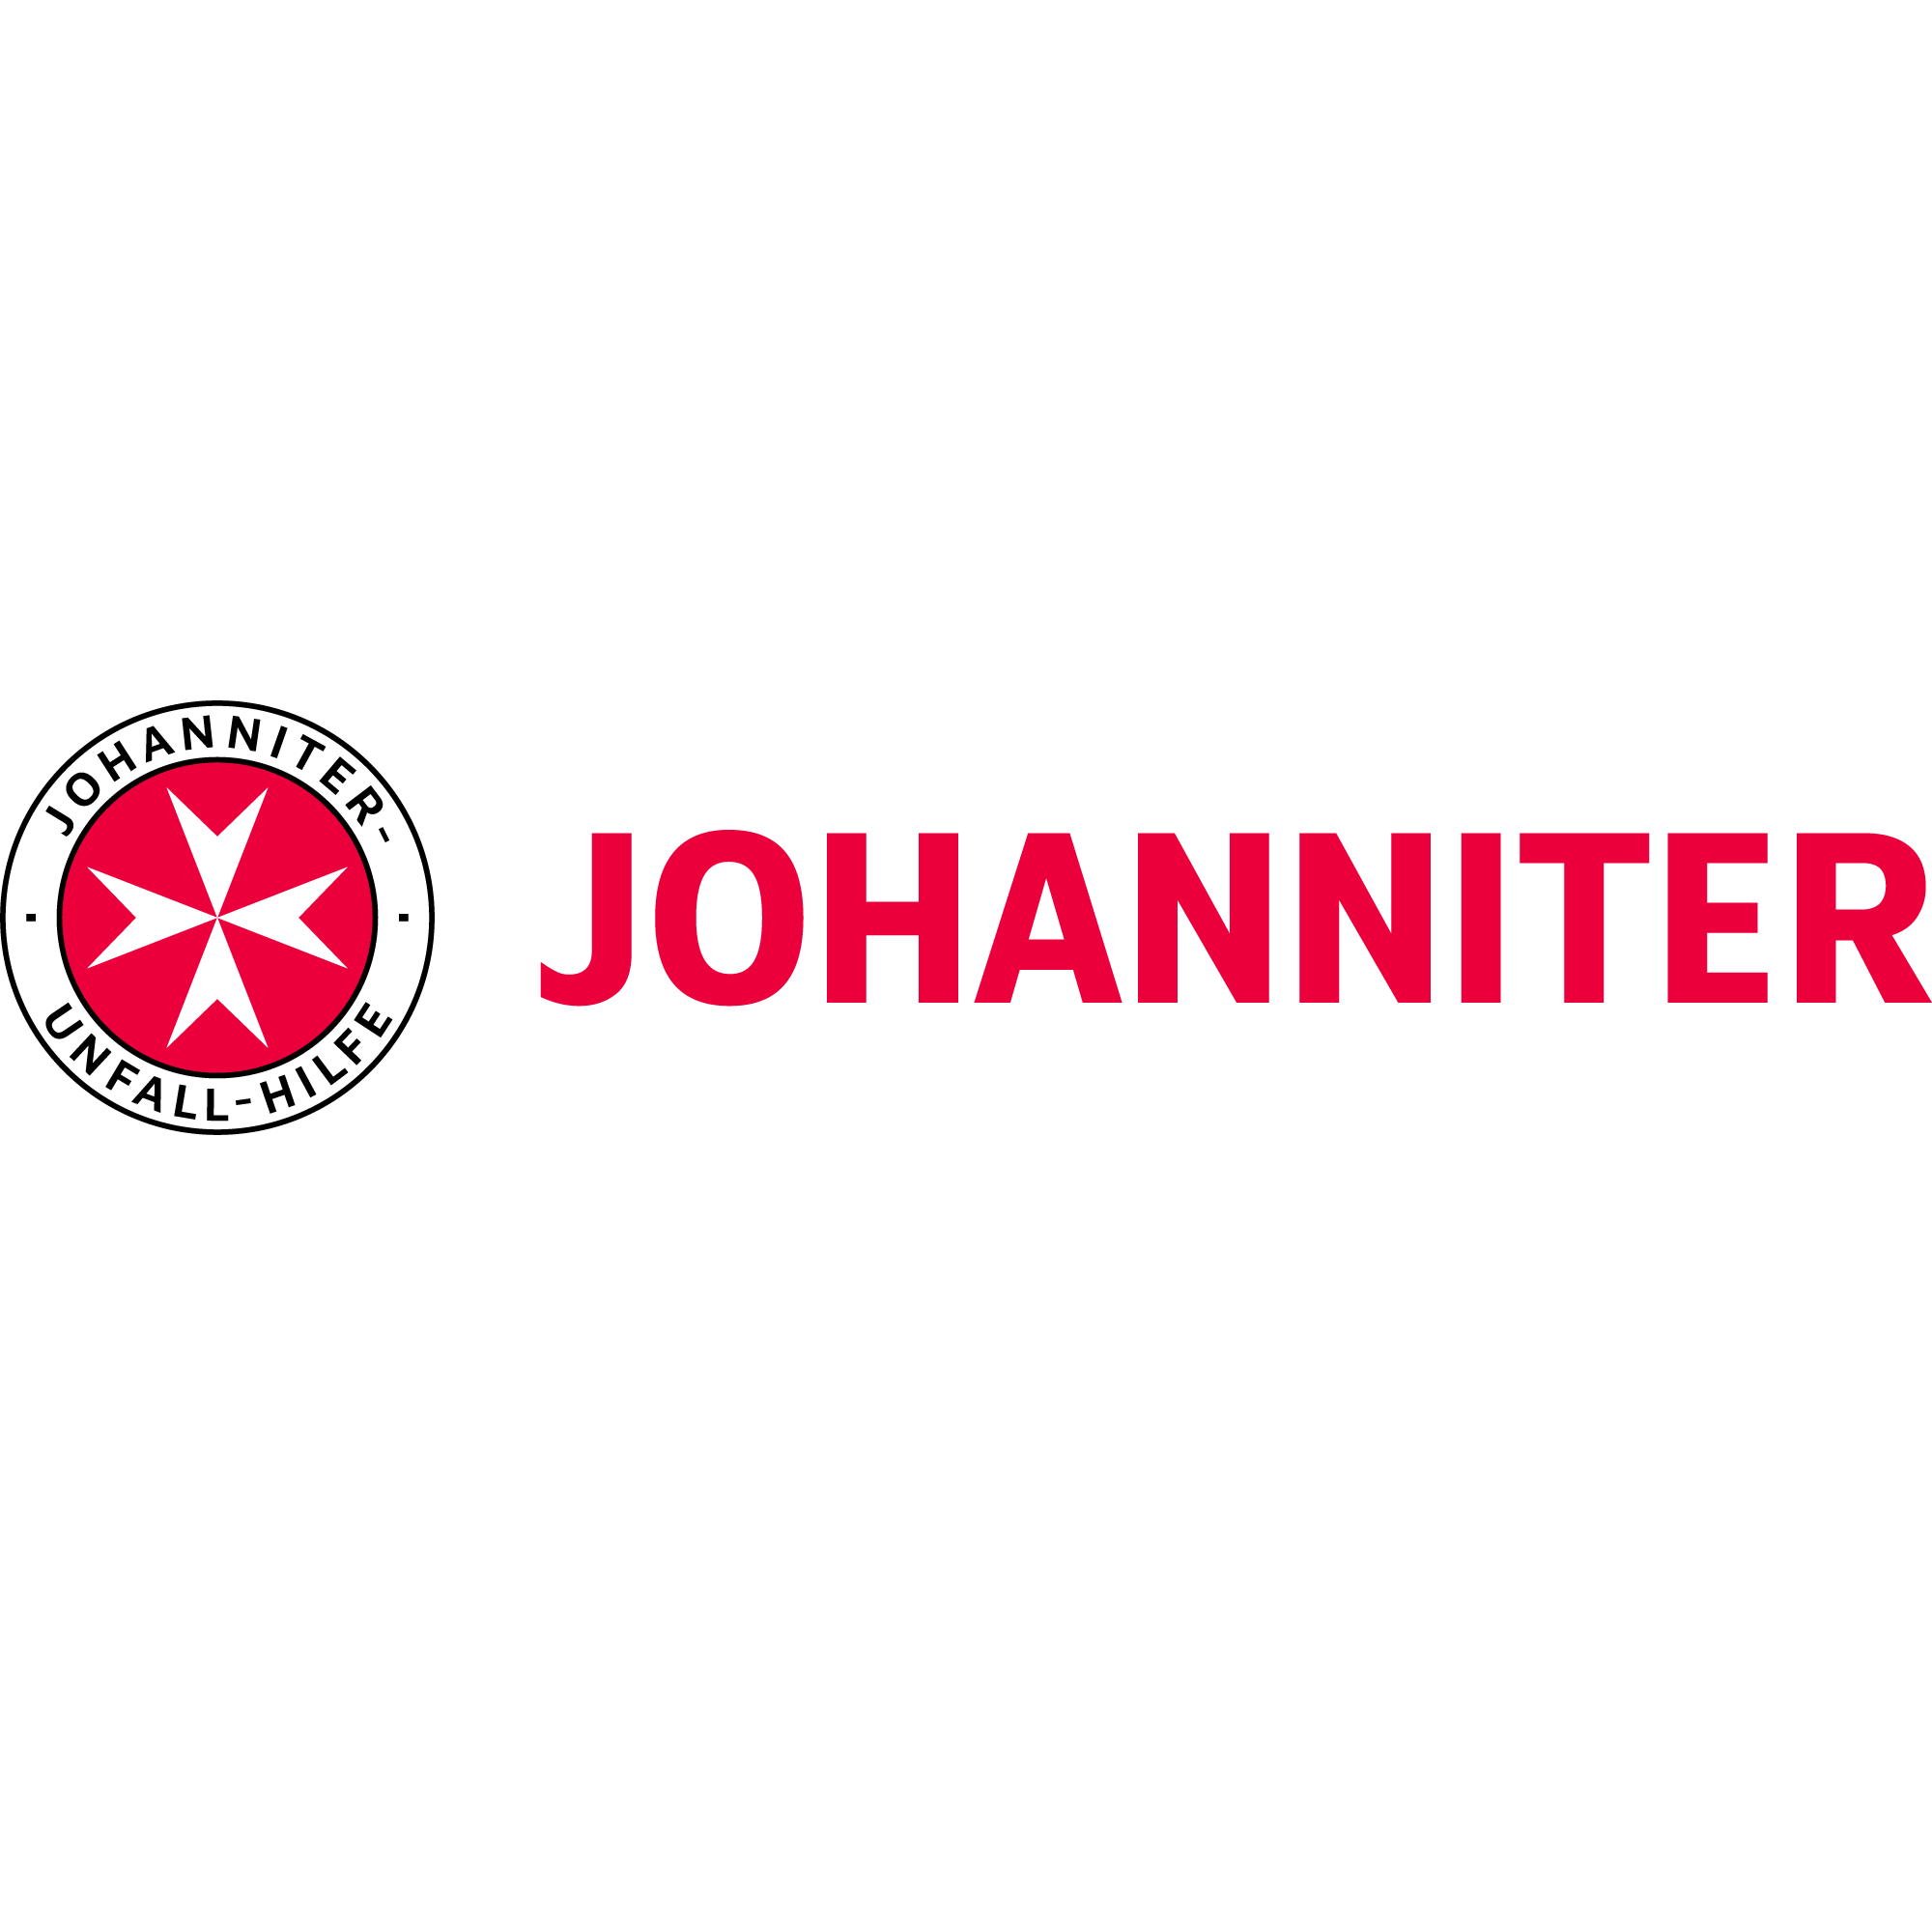 Johanniter-Unfall-Hilfe e.V. - Fortbildungszentrum Pflege und Soziales in Lübeck - Logo